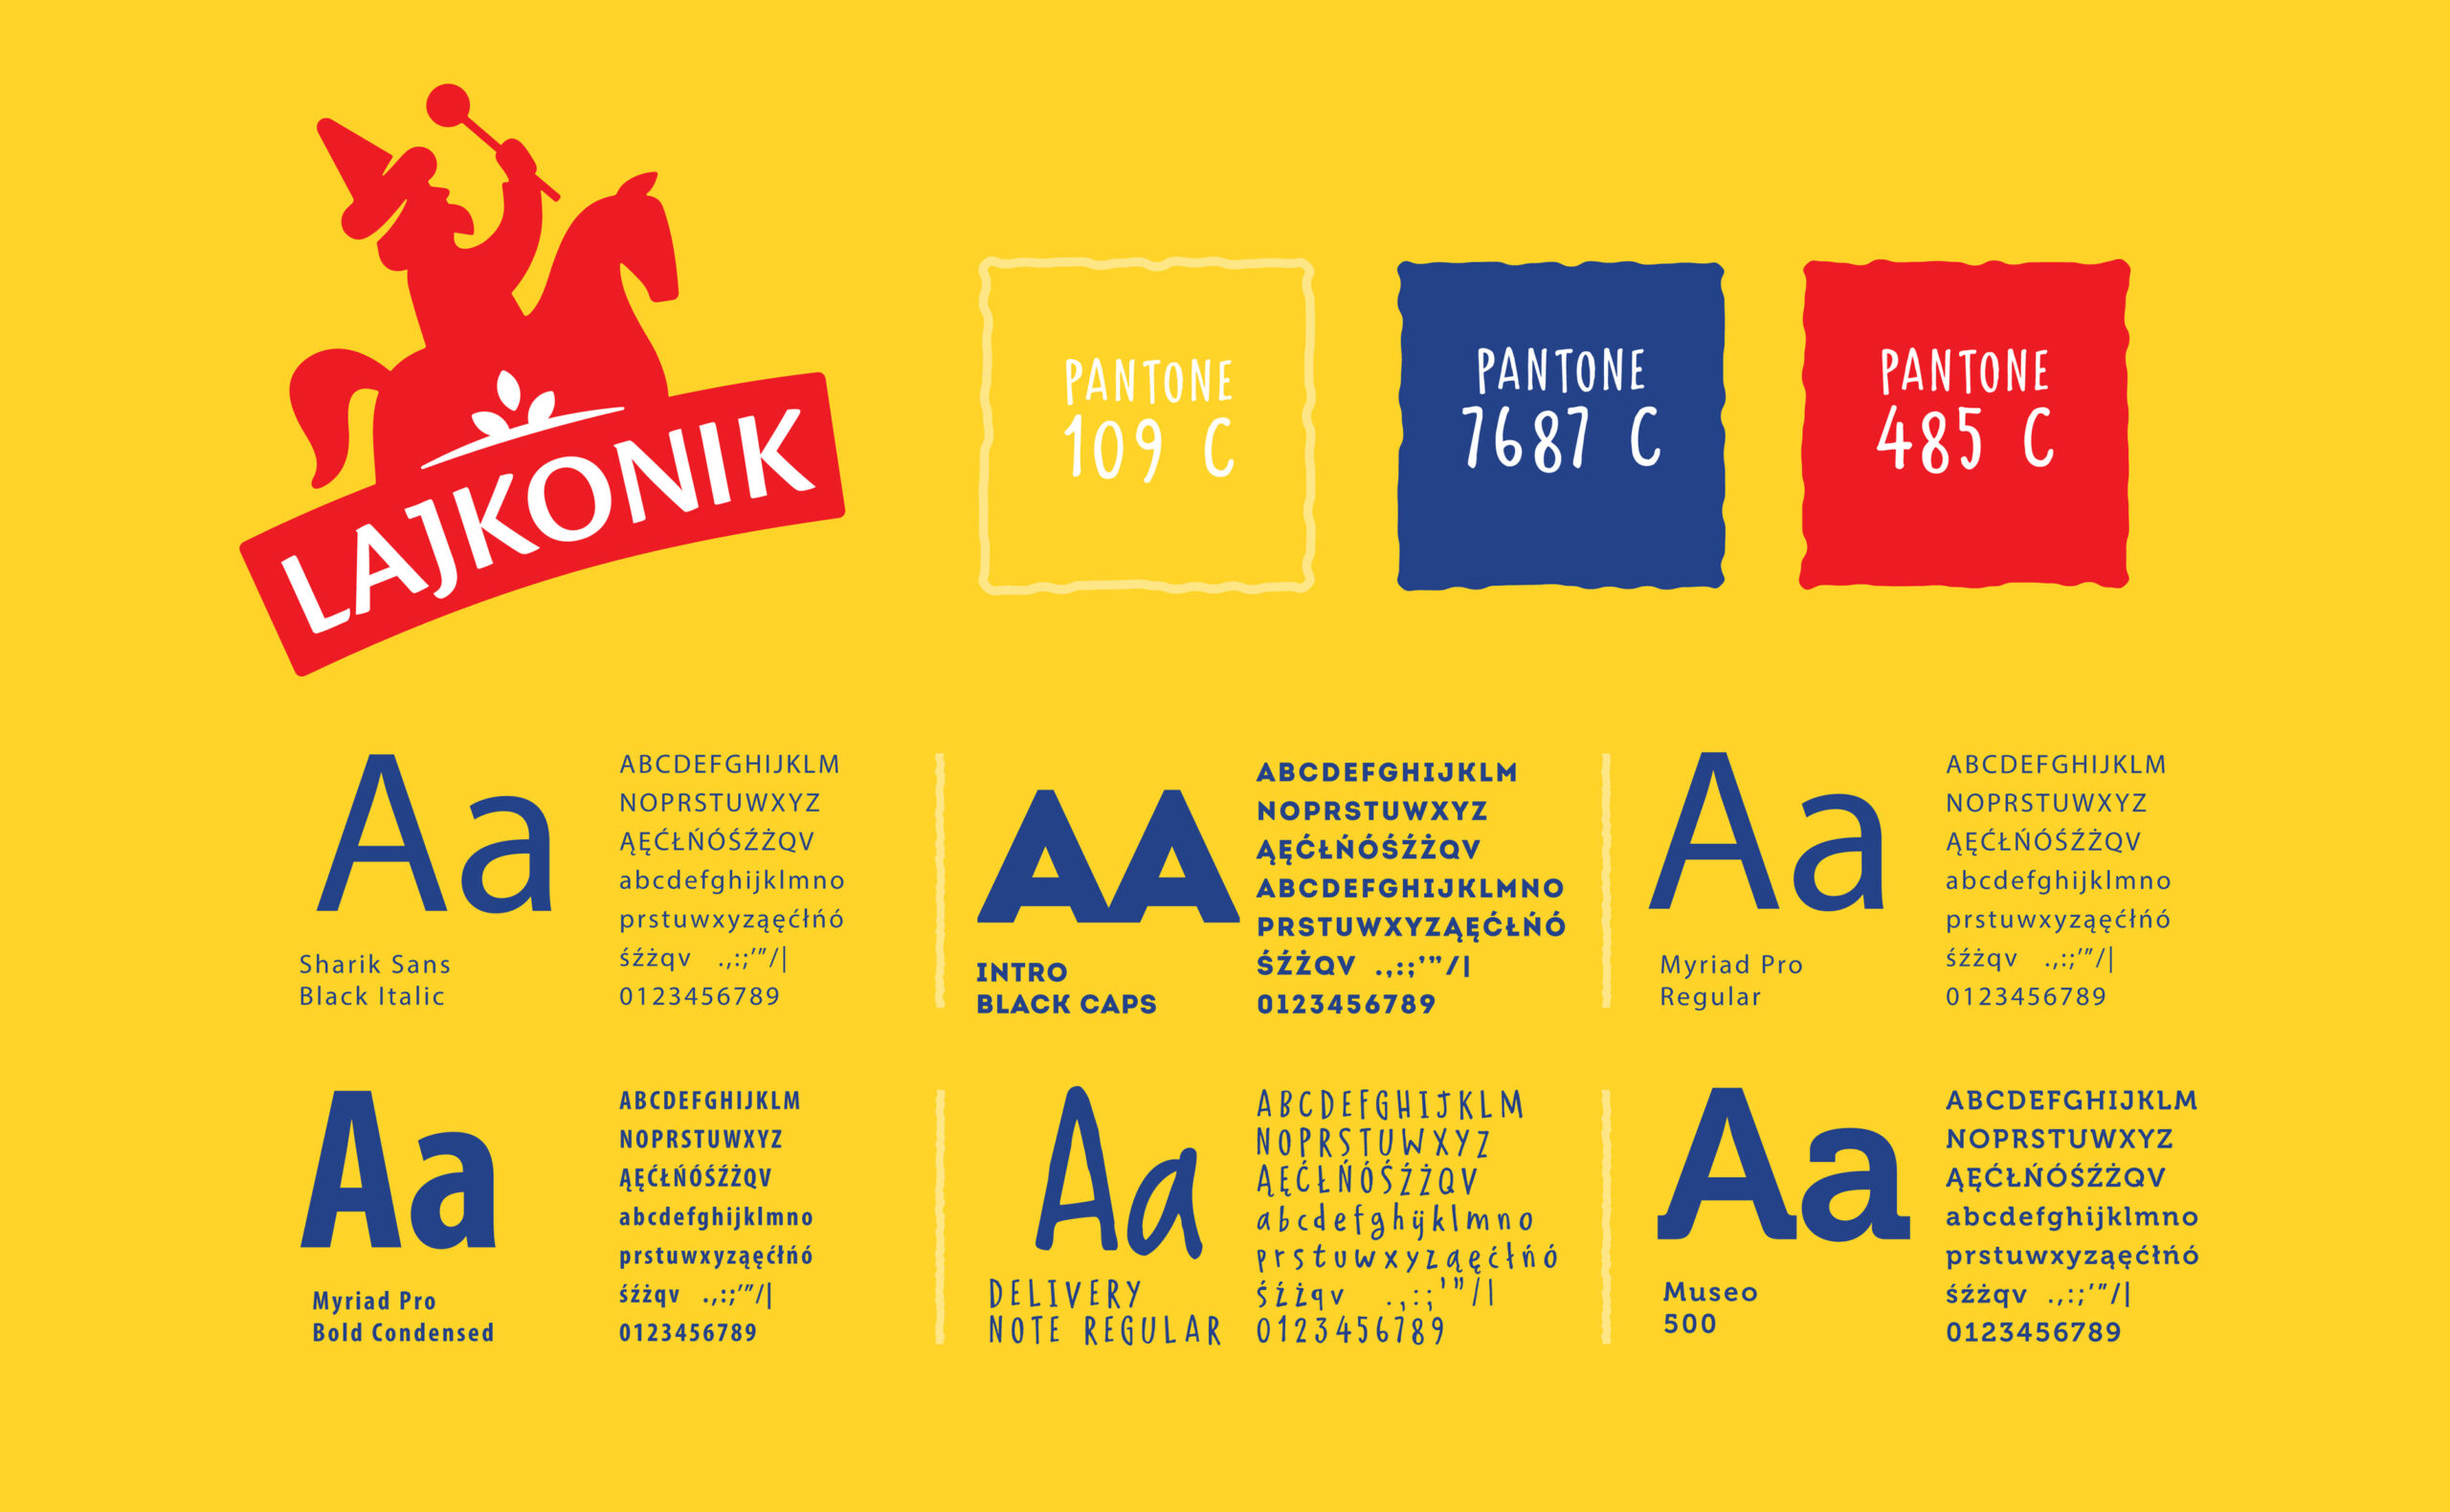 Identyfikacja wizualna Lajkonik - kolory i typografia